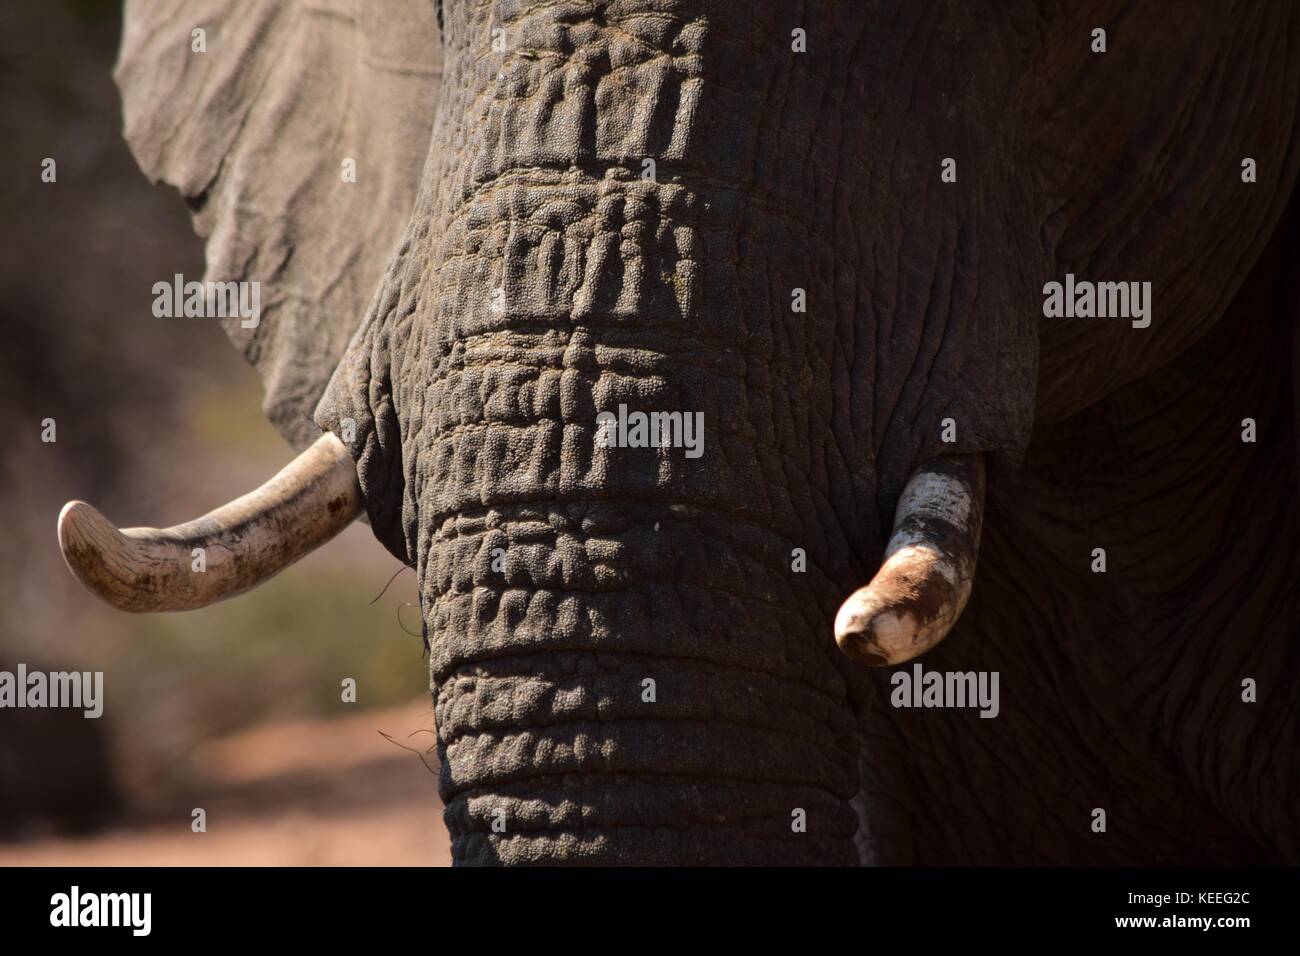 Un dettaglio foto di un elefante africano di zanne, bracconaggio bersagli. Visibili anche le pieghe della pelle grigia della proboscide e orecchio. Fauna africana Foto Stock